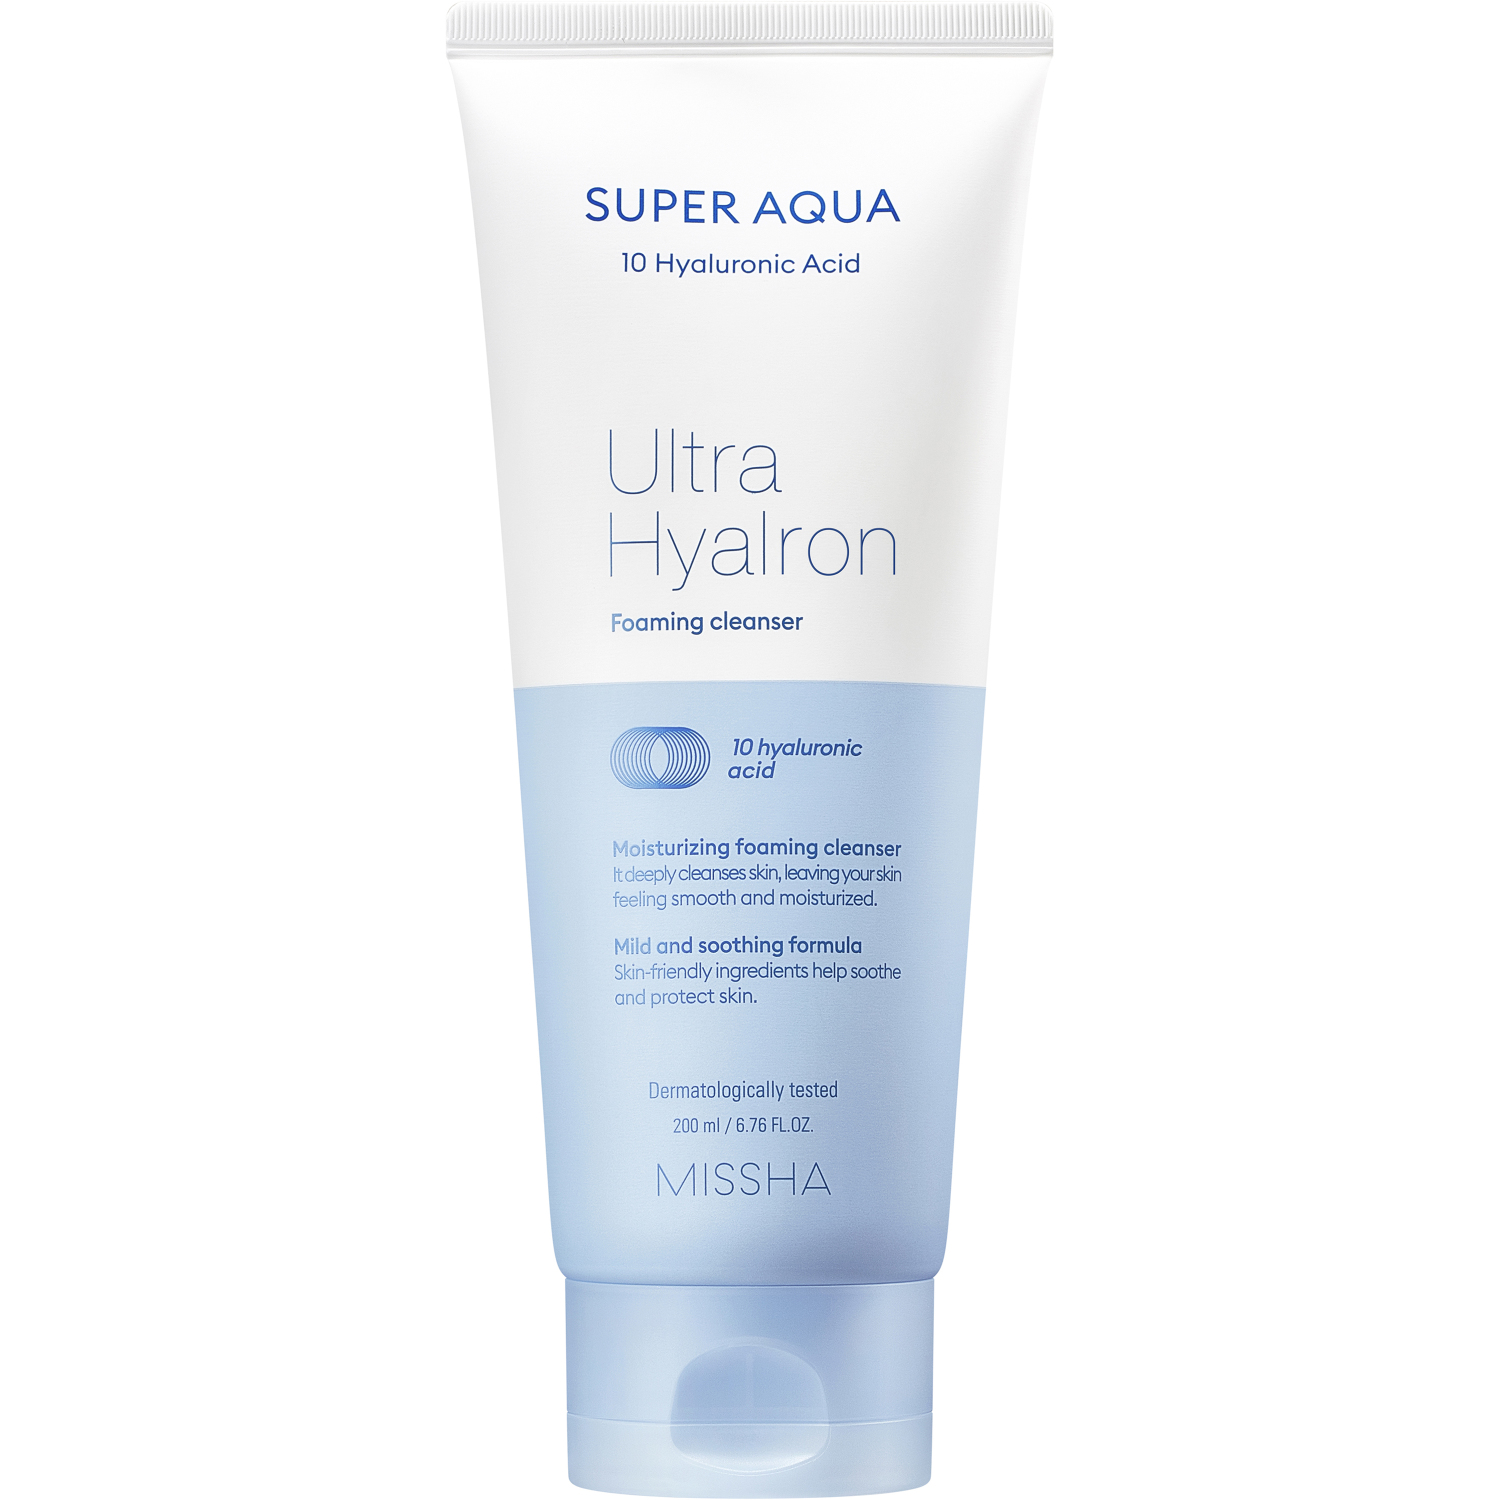 Пенка для умывания MISSHA Super Aqua Ultra Hyalon Foaming Cleanser 200 мл missha салфетки для умывания и снятия макияжа ultra hyalron 30 шт